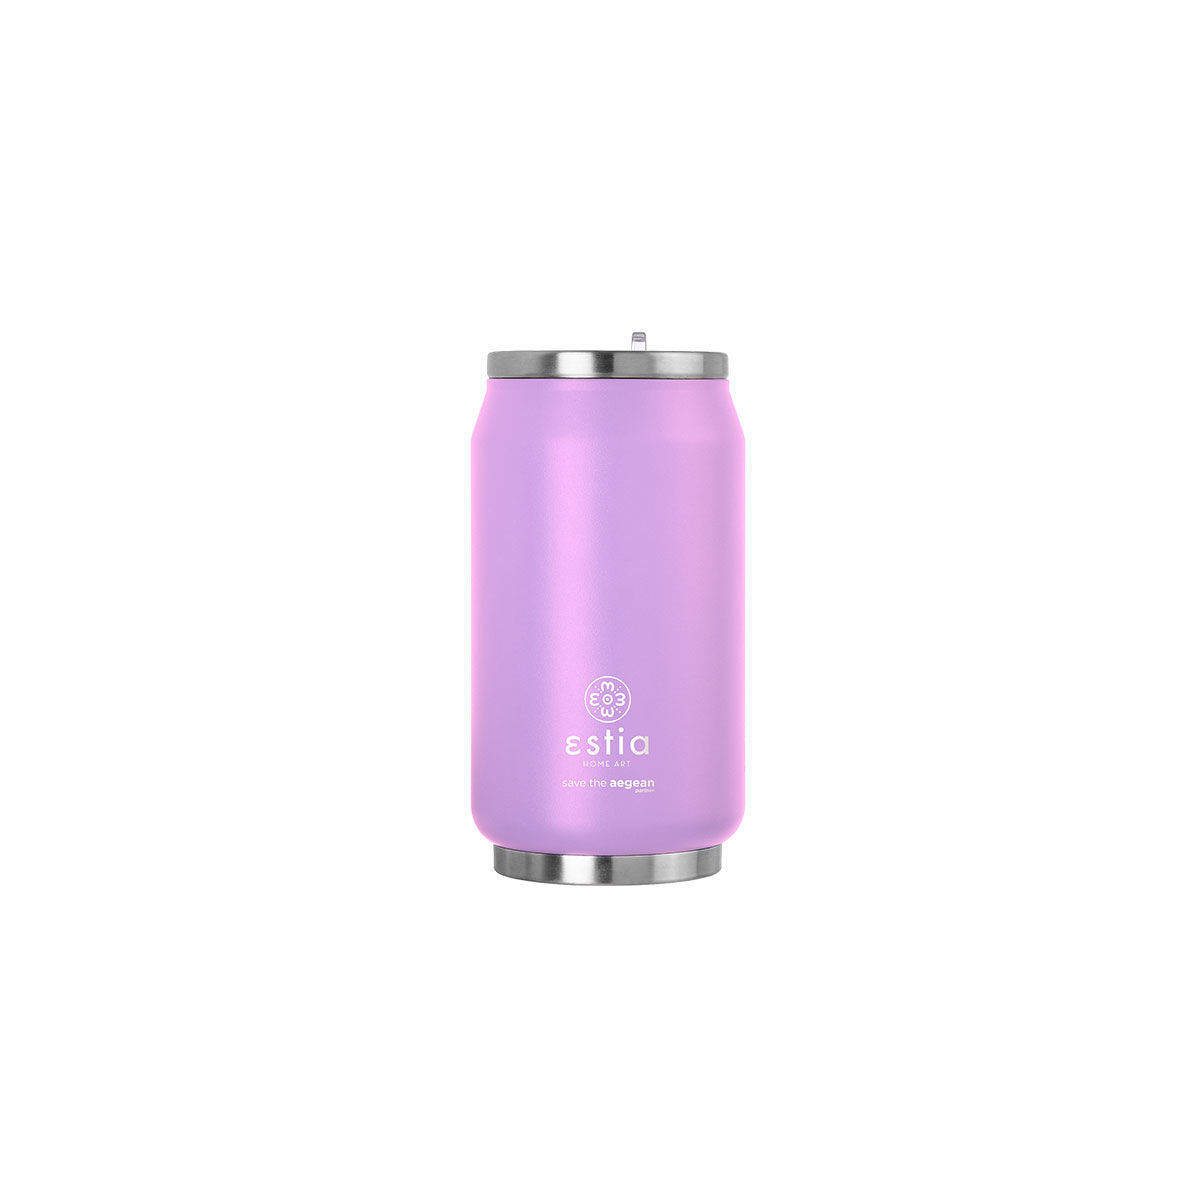 Θερμός-Ποτήρι Ανοξείδωτο Με Καλαμάκι Lavender Purple Save The Aegean Estia 300ml-7×14εκ. 01-16715 (Υλικό: Ανοξείδωτο, Χρώμα: Μωβ) – estia – 01-16715